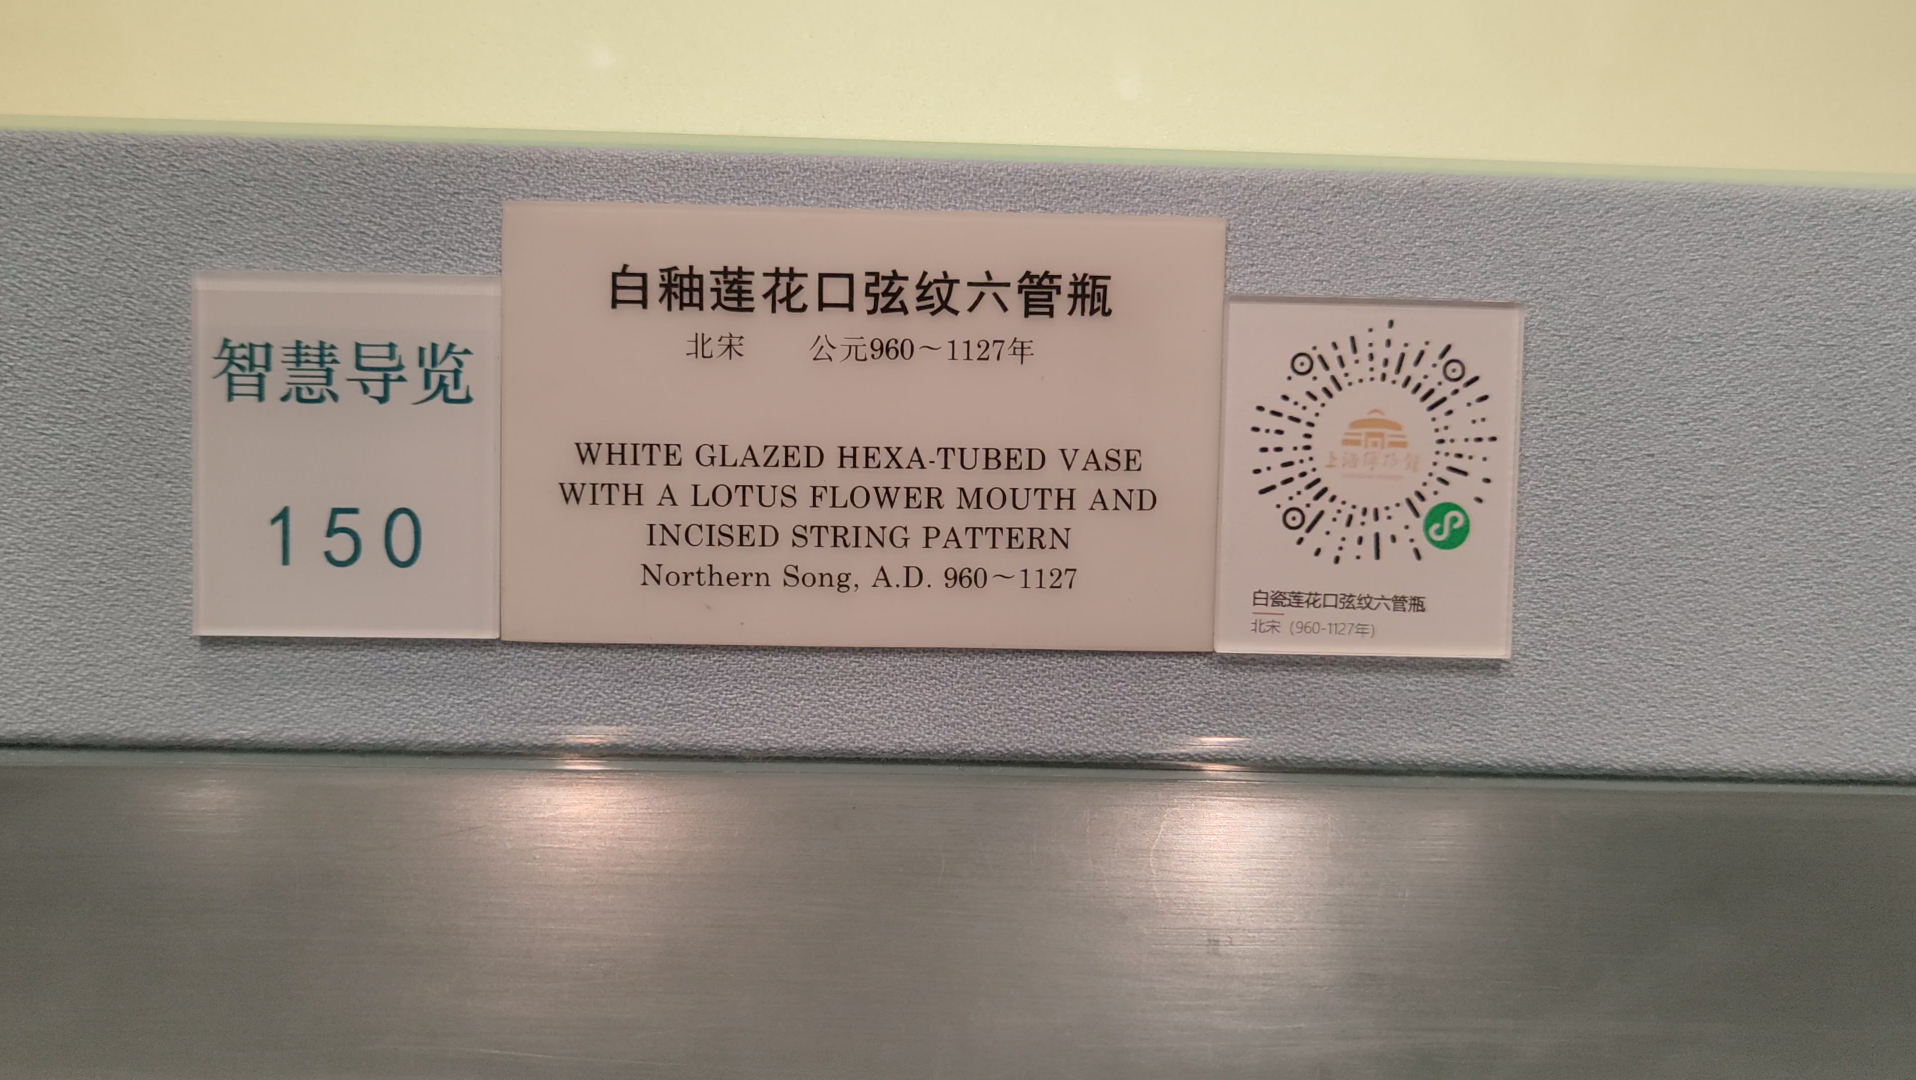 上海博物馆的展品白釉莲花口弦纹六管瓶有智慧导览